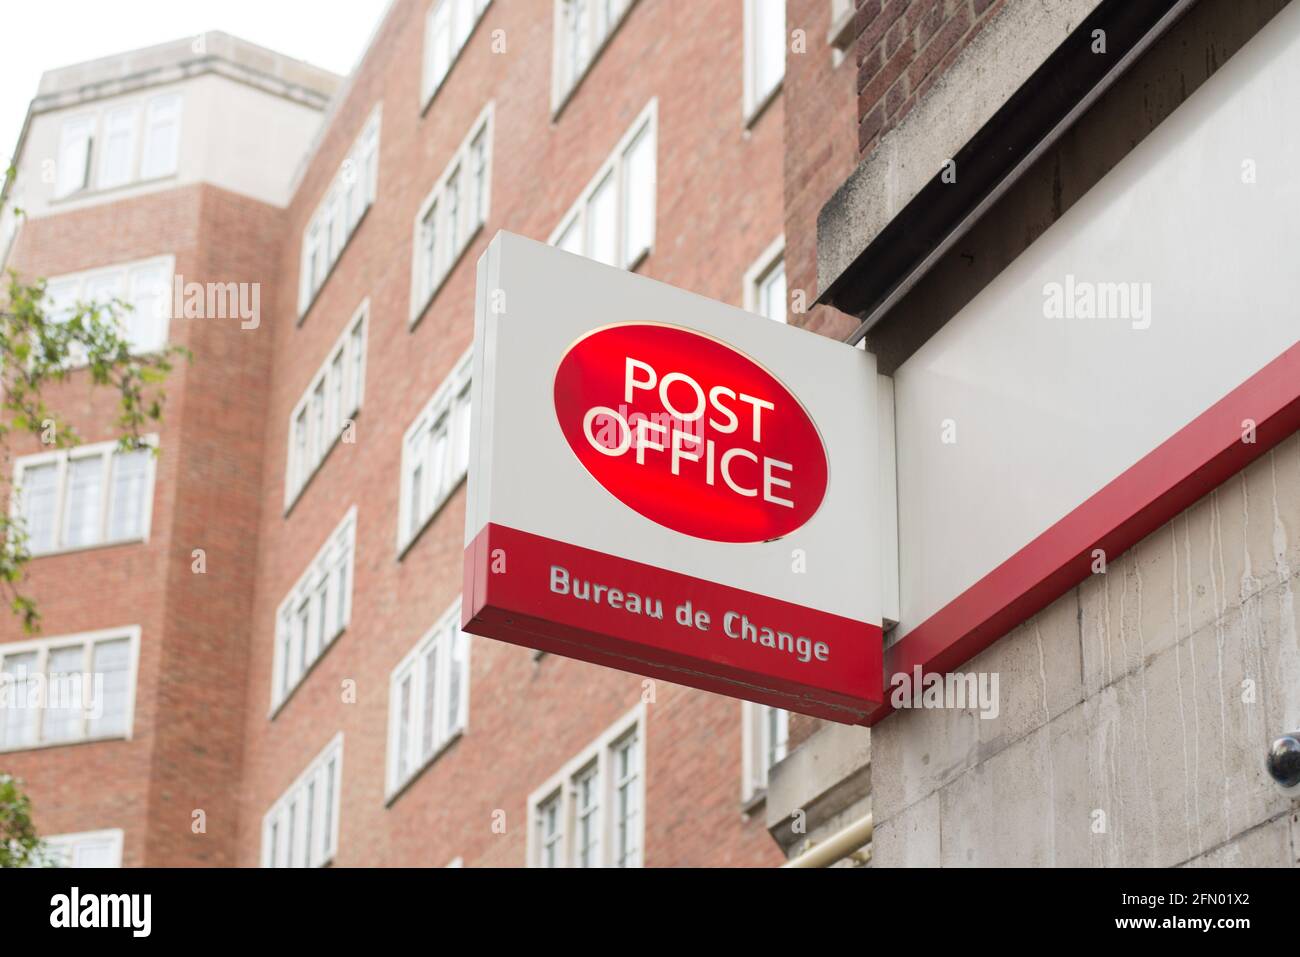 Modern Post Office Bureau de Change Kensington Shop Sign Stock Photo